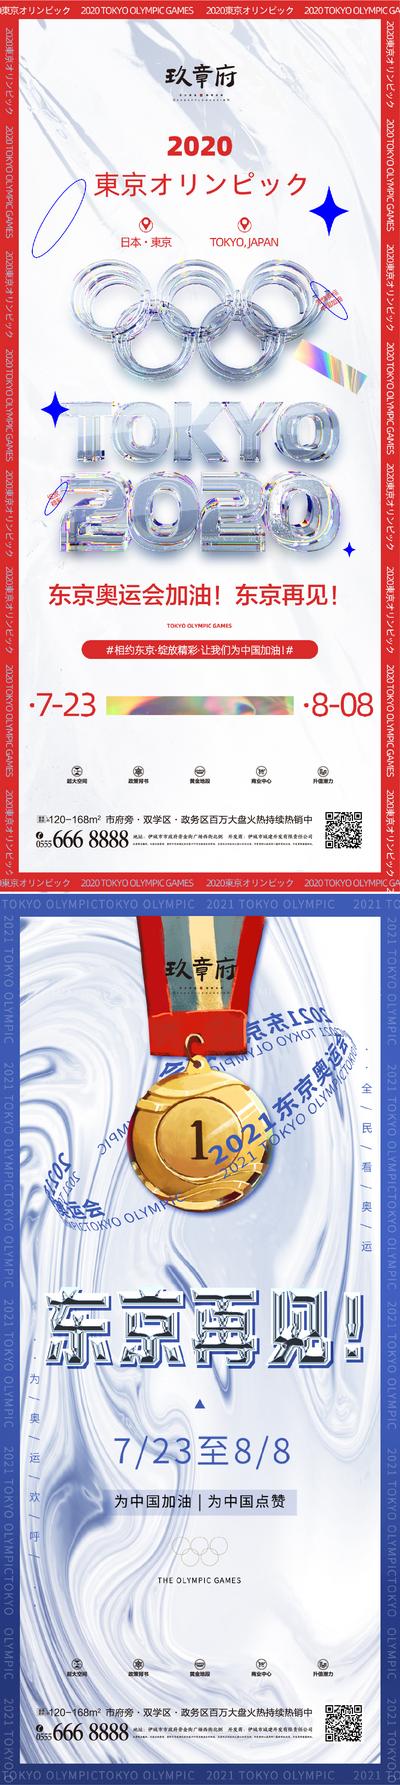 南门网 海报 地产 奥运会 蒸汽波 酸性 镭射 五环 奖章 